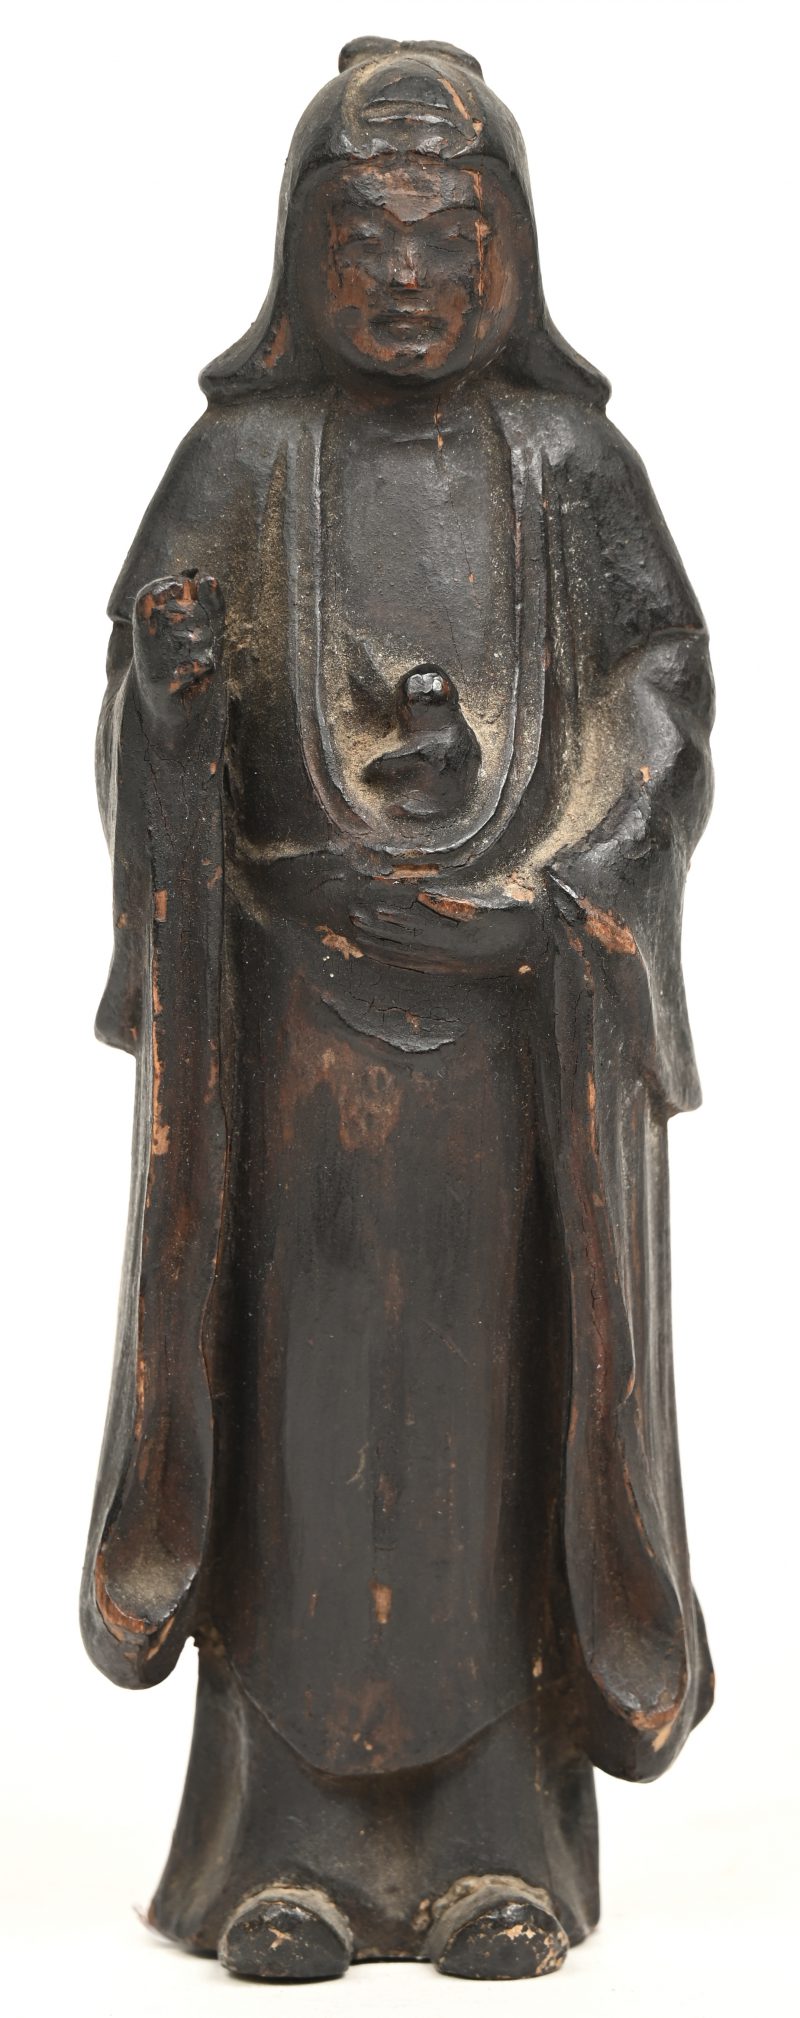 “Buddha”, Chia Ching, houten beeldje van Buddha circa 1550